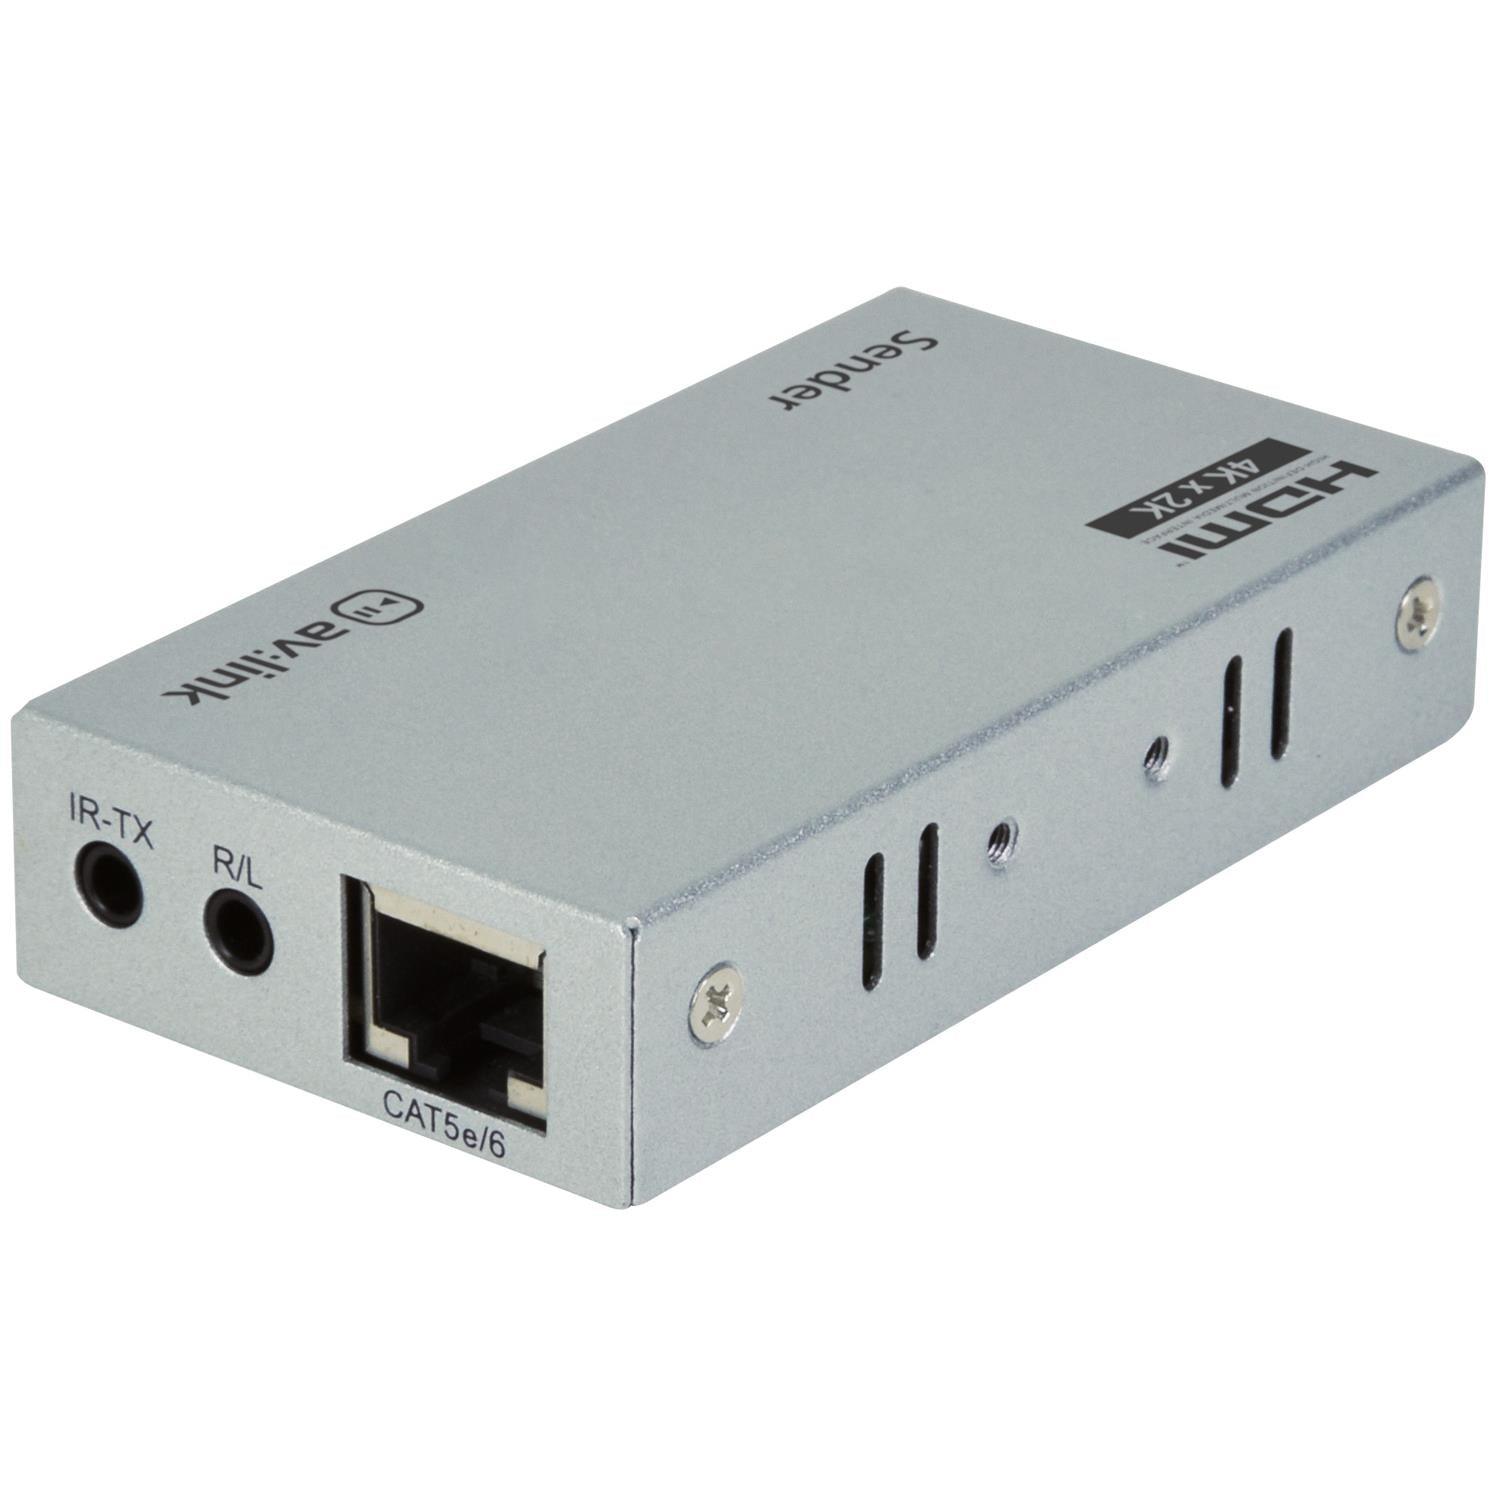 av:link 100m Range 4K HDMI Extender Over Ethernet Kit - DY Pro Audio